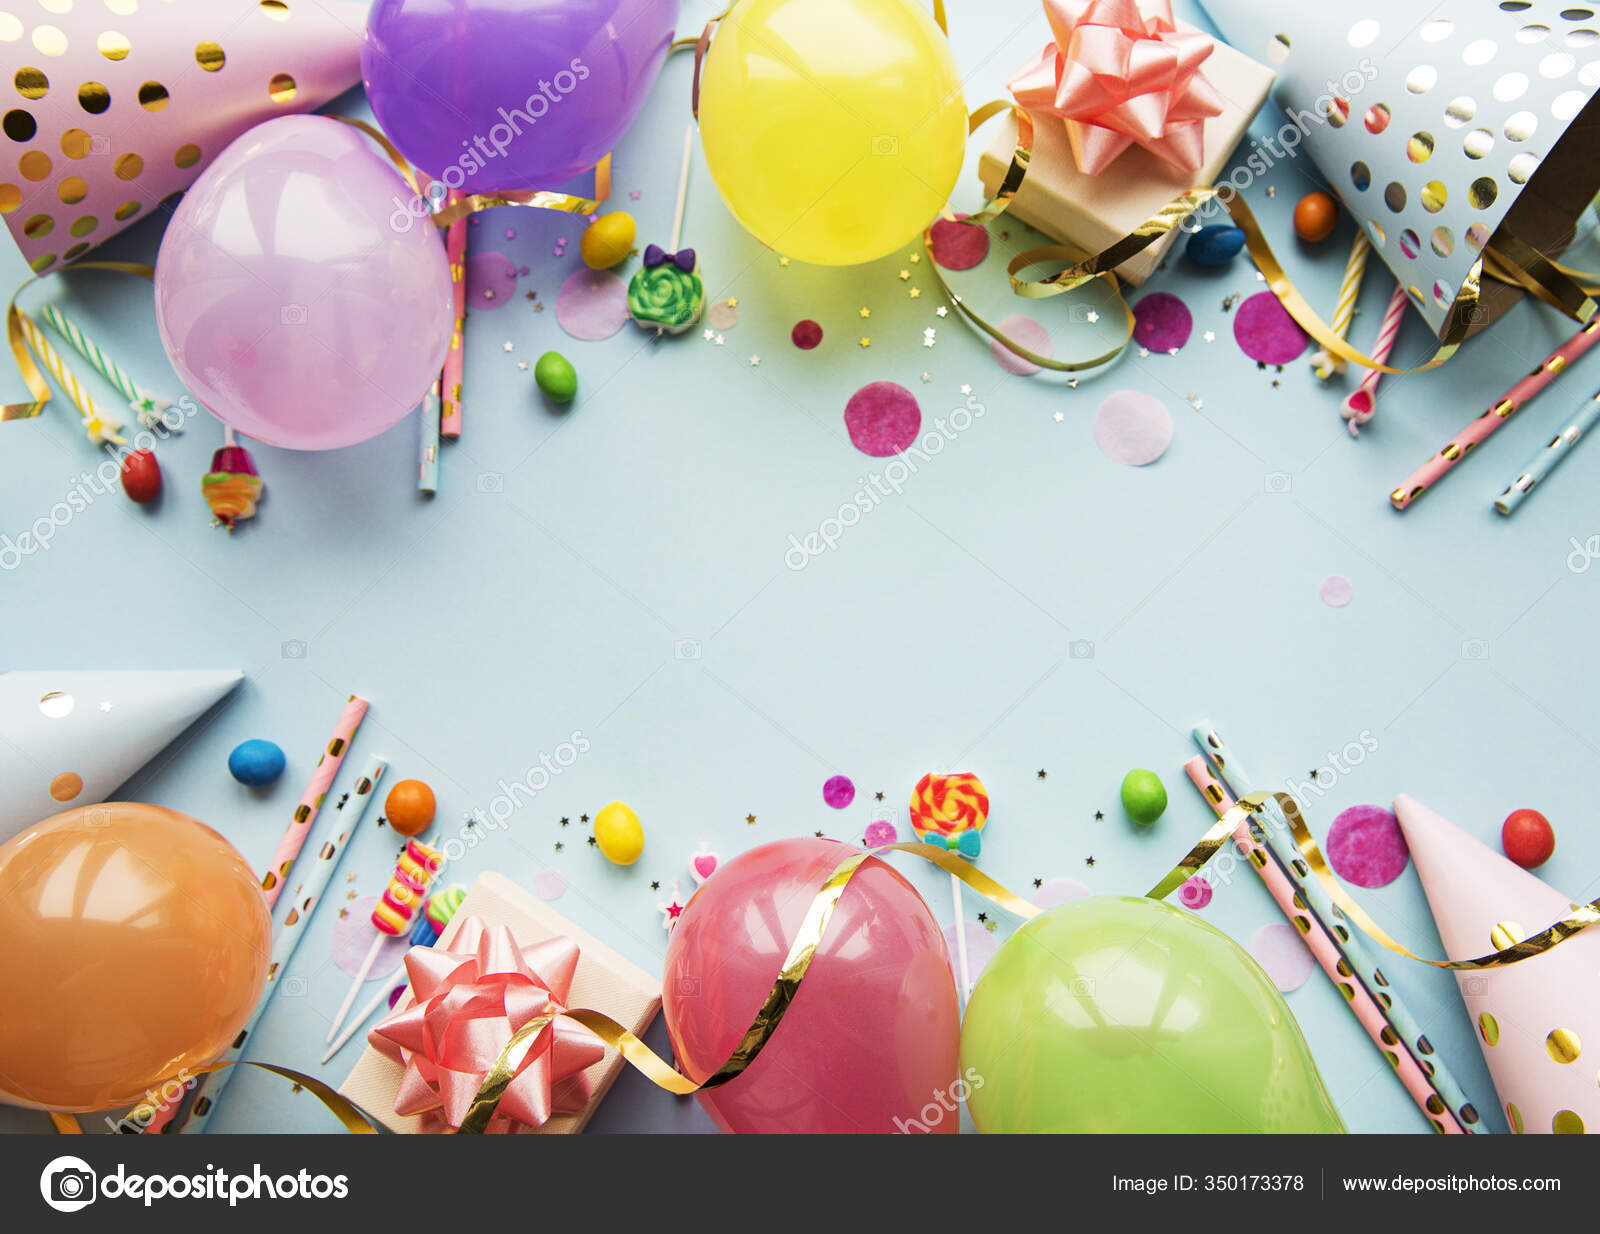 Hãy cùng tận hưởng không gian vui tươi và nhiệt động của bữa tiệc sinh nhật với hình nền sinh nhật đầy màu sắc và bóng bay. Sắp xếp tất cả các phụ kiện vào trên bộ khung sinh nhật để tạo nên một bầu không khí sinh động và đáng nhớ.